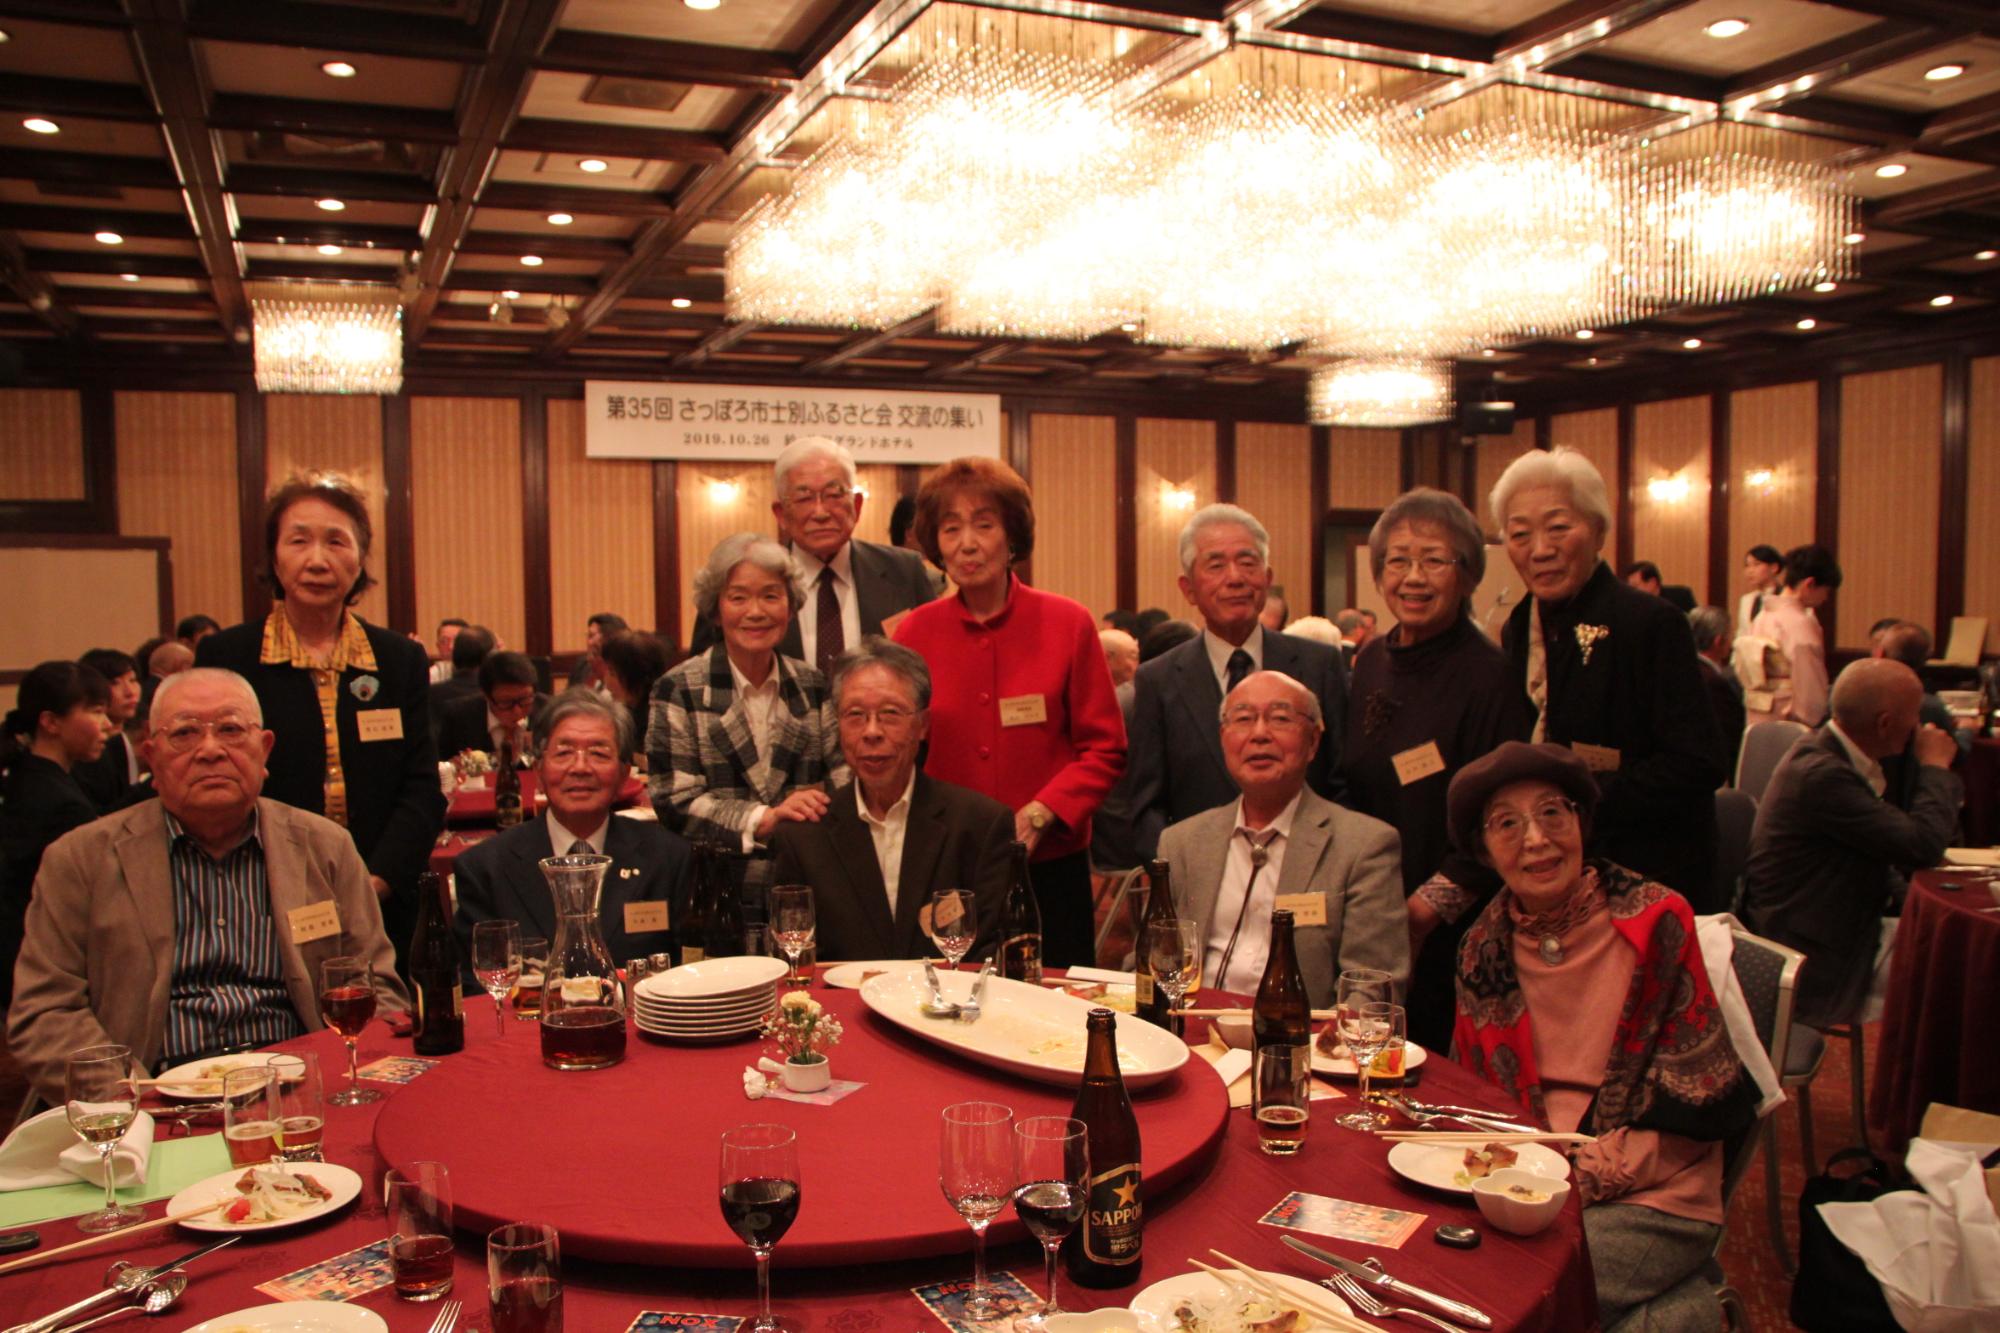 赤いテーブルクロスの丸いテーブルに料理や飲み物が並びテーブルを囲んで、男性7名女性5名、総勢12名の方が記念撮影をしている写真